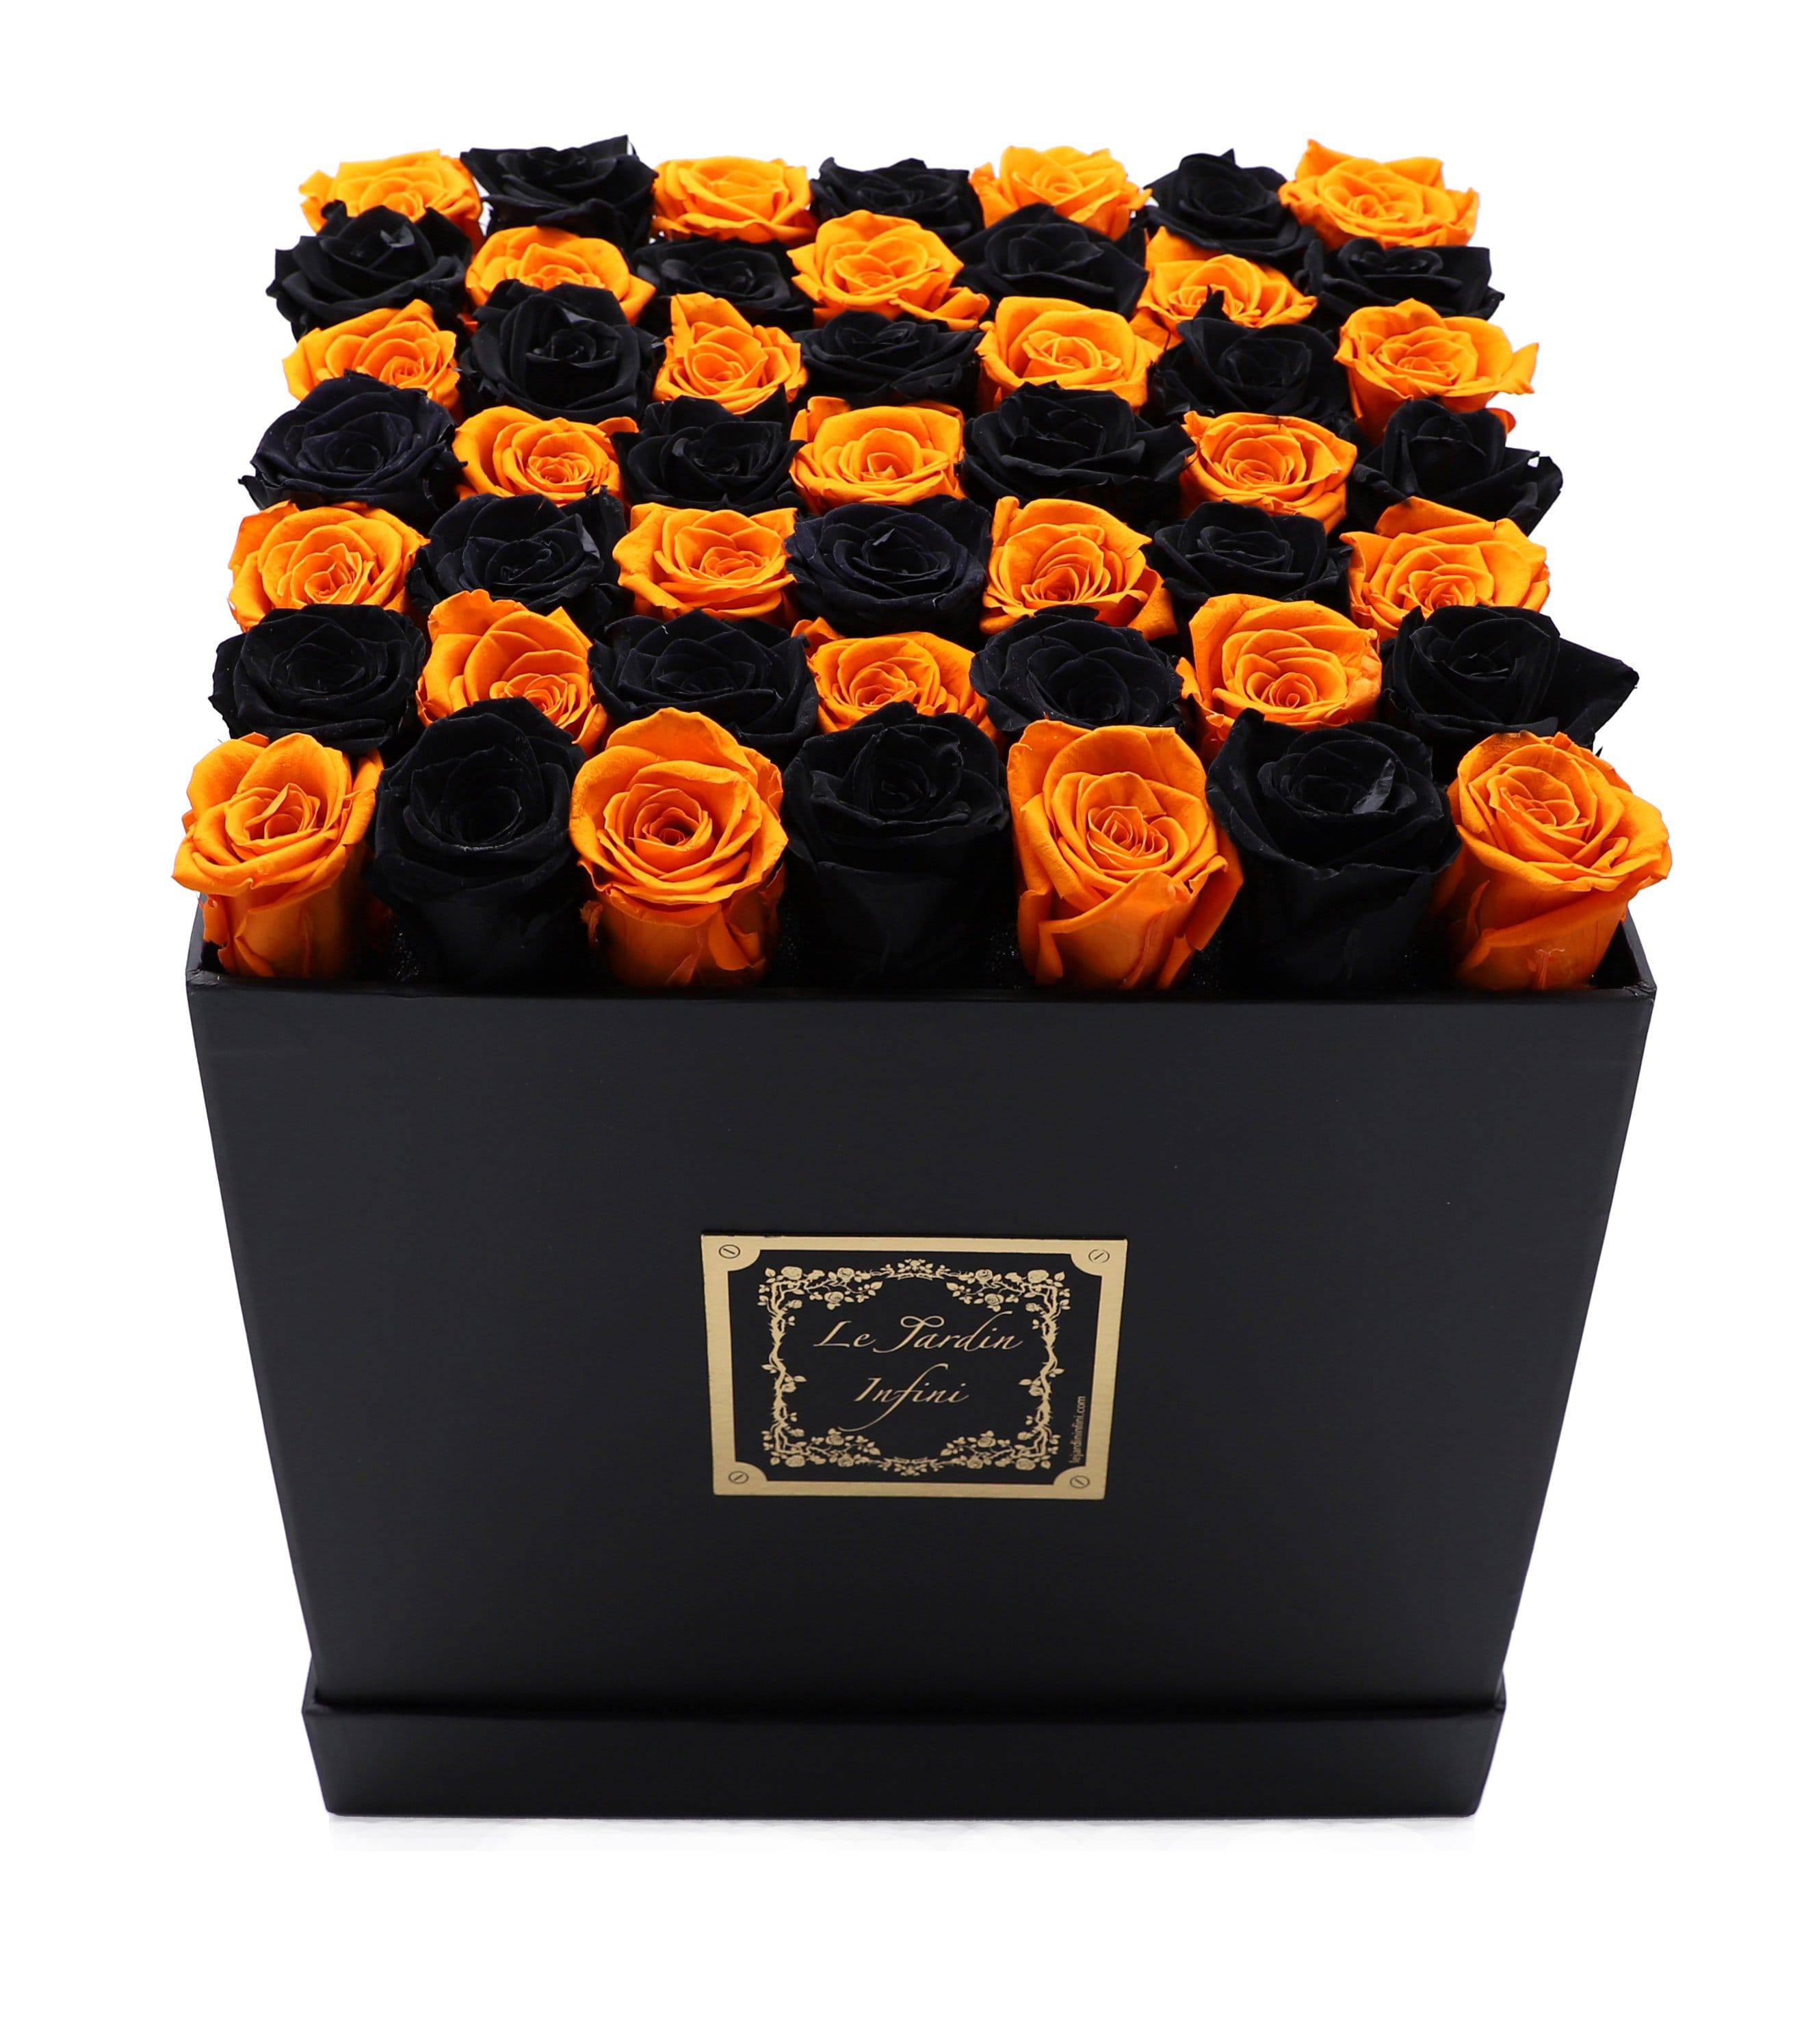 Black & Orange Checked Preserved Roses - Large Square Black Box - Le Jardin Infini Roses in a Box